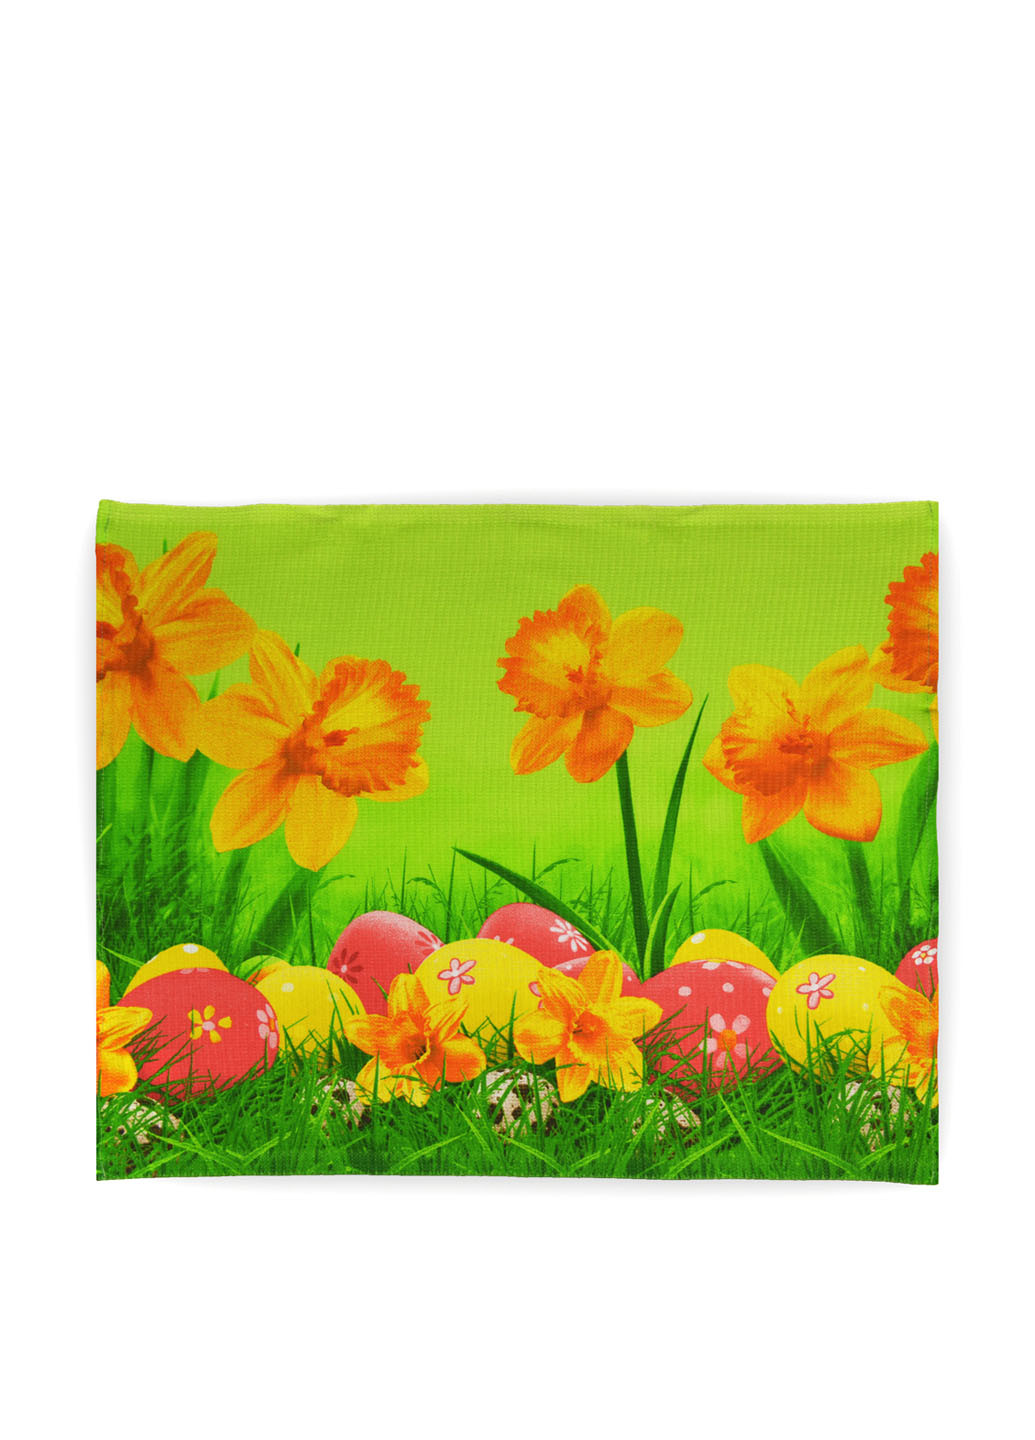 No Brand полотенце, 50х60 см цветочный зеленый производство - Украина